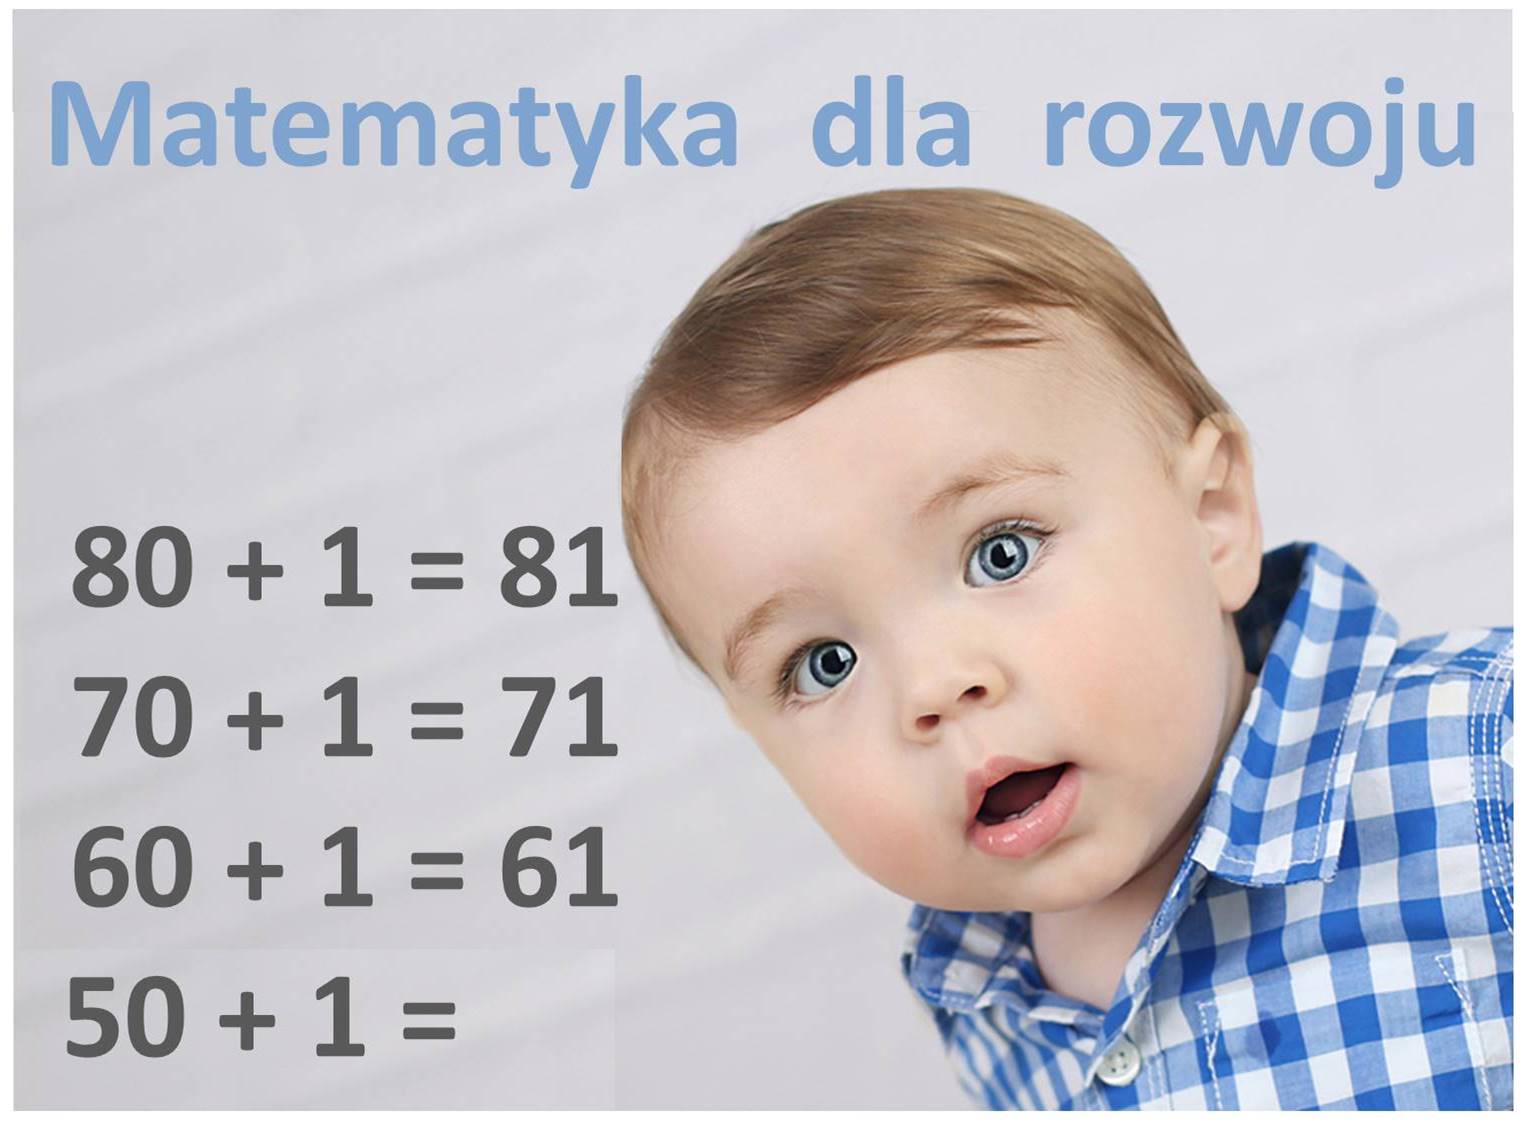 Matematyka dla rozwoju u dzieci w Warszawie